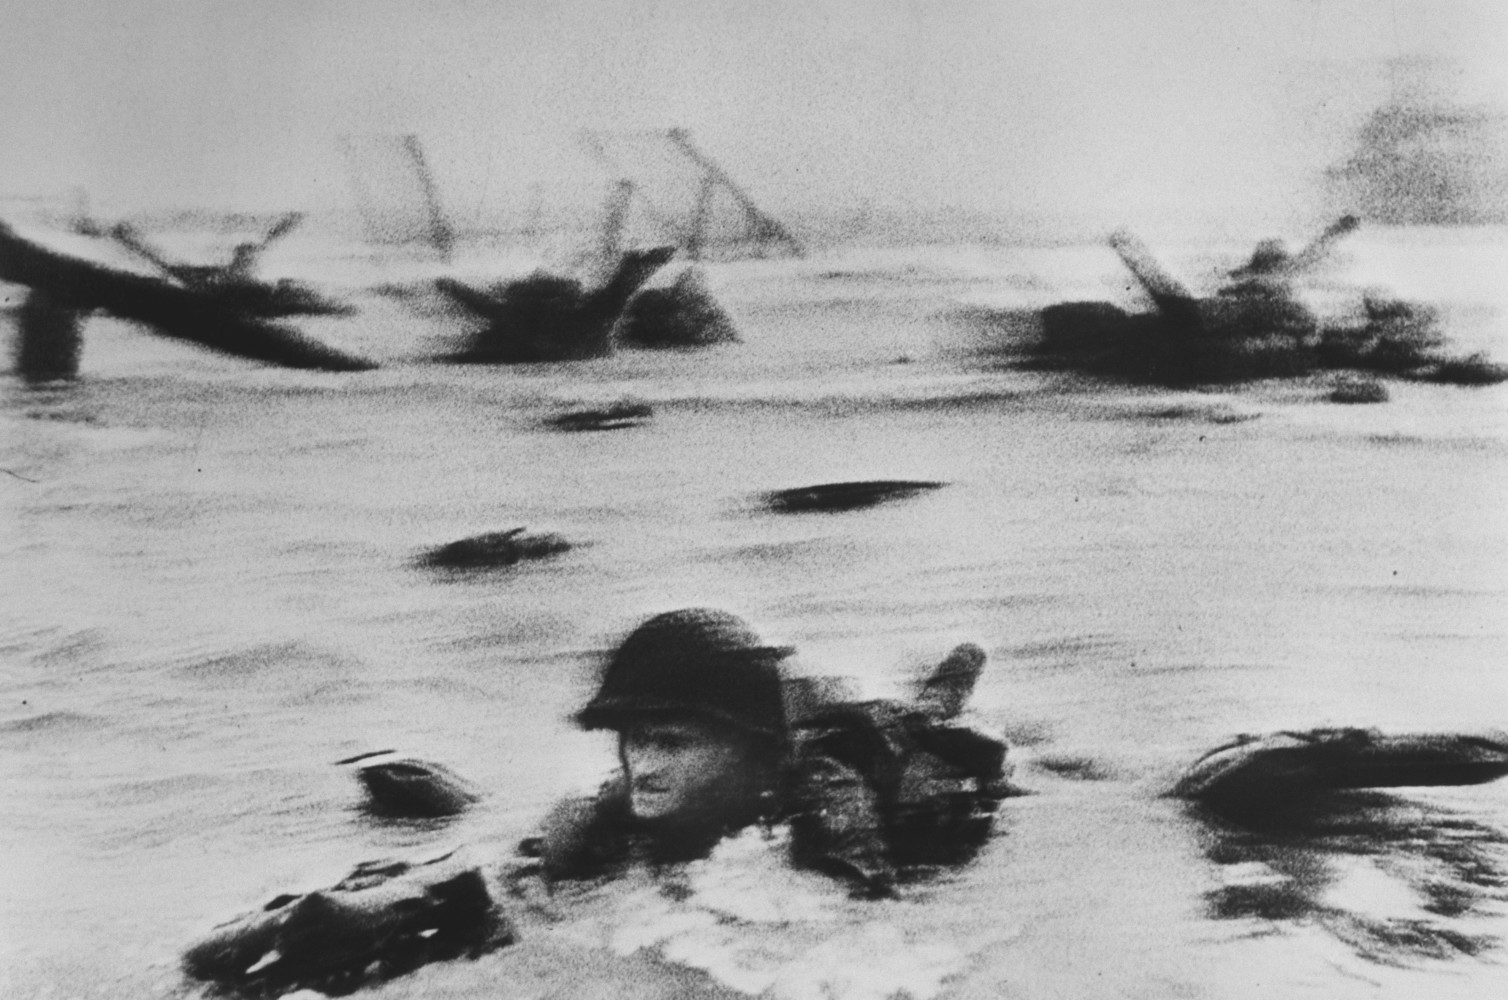 <br />Fotó: Robert Capa: Normandia. D-DAY, 1944. június 6. © Robert Capa © International Center of Photography<br /><br />Egy technikai malőr következtében csak kis töredéke maradt ránk annak az ikonikus fotósorozatnak, ami a normandiai partraszállást dokumentálta. Robert Capát a Life magazin kérte fel, hogy örökítse meg az amerikai hadsereg Európára mért első nagy csapását, ami végül nagy részben befolyásolta a második világháború kimenetelét.